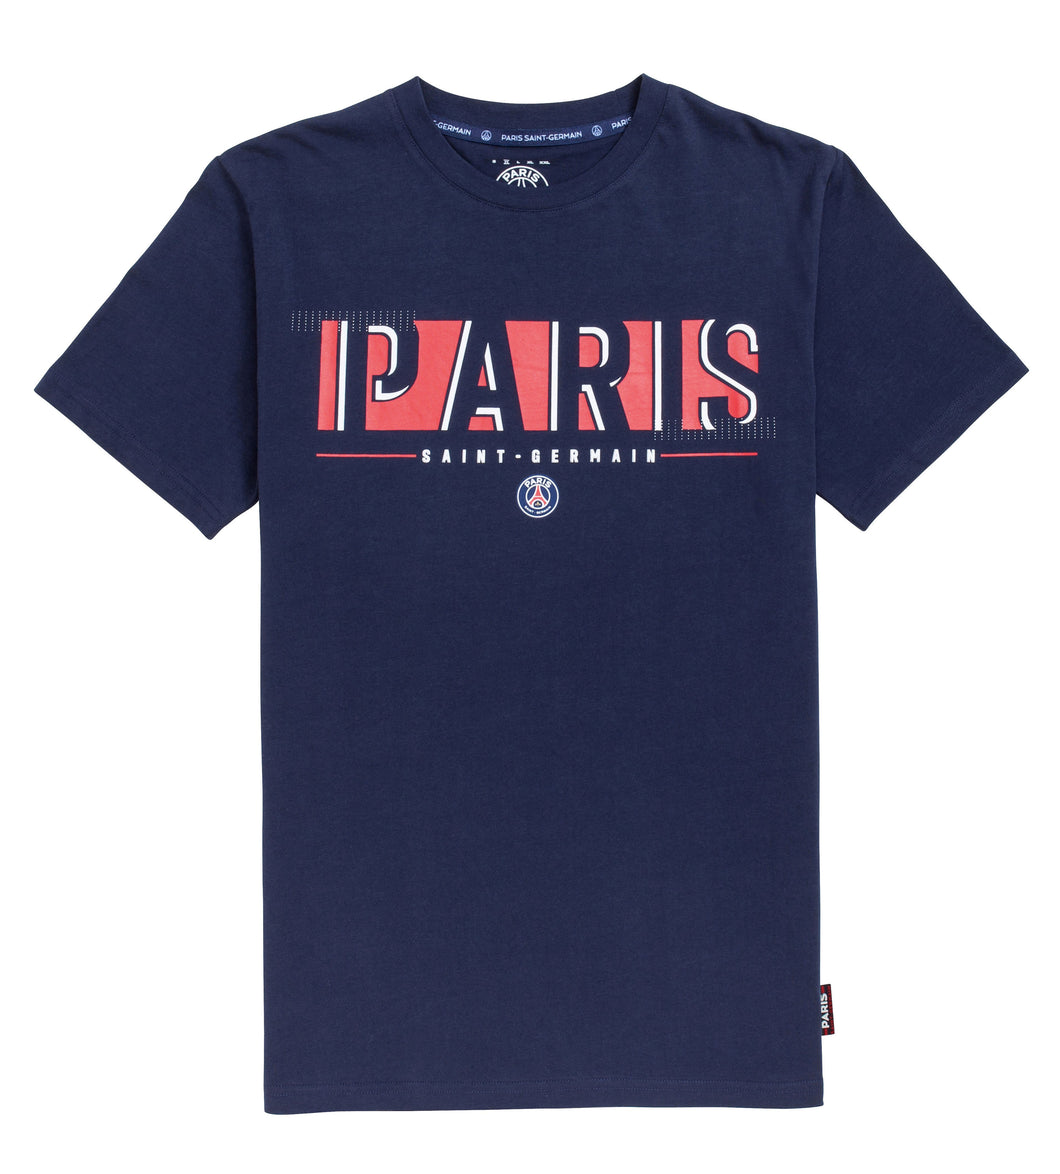 Paris Saint-Germain Survêtement PSG - Collection Officielle Taille Adulte  Homme XL